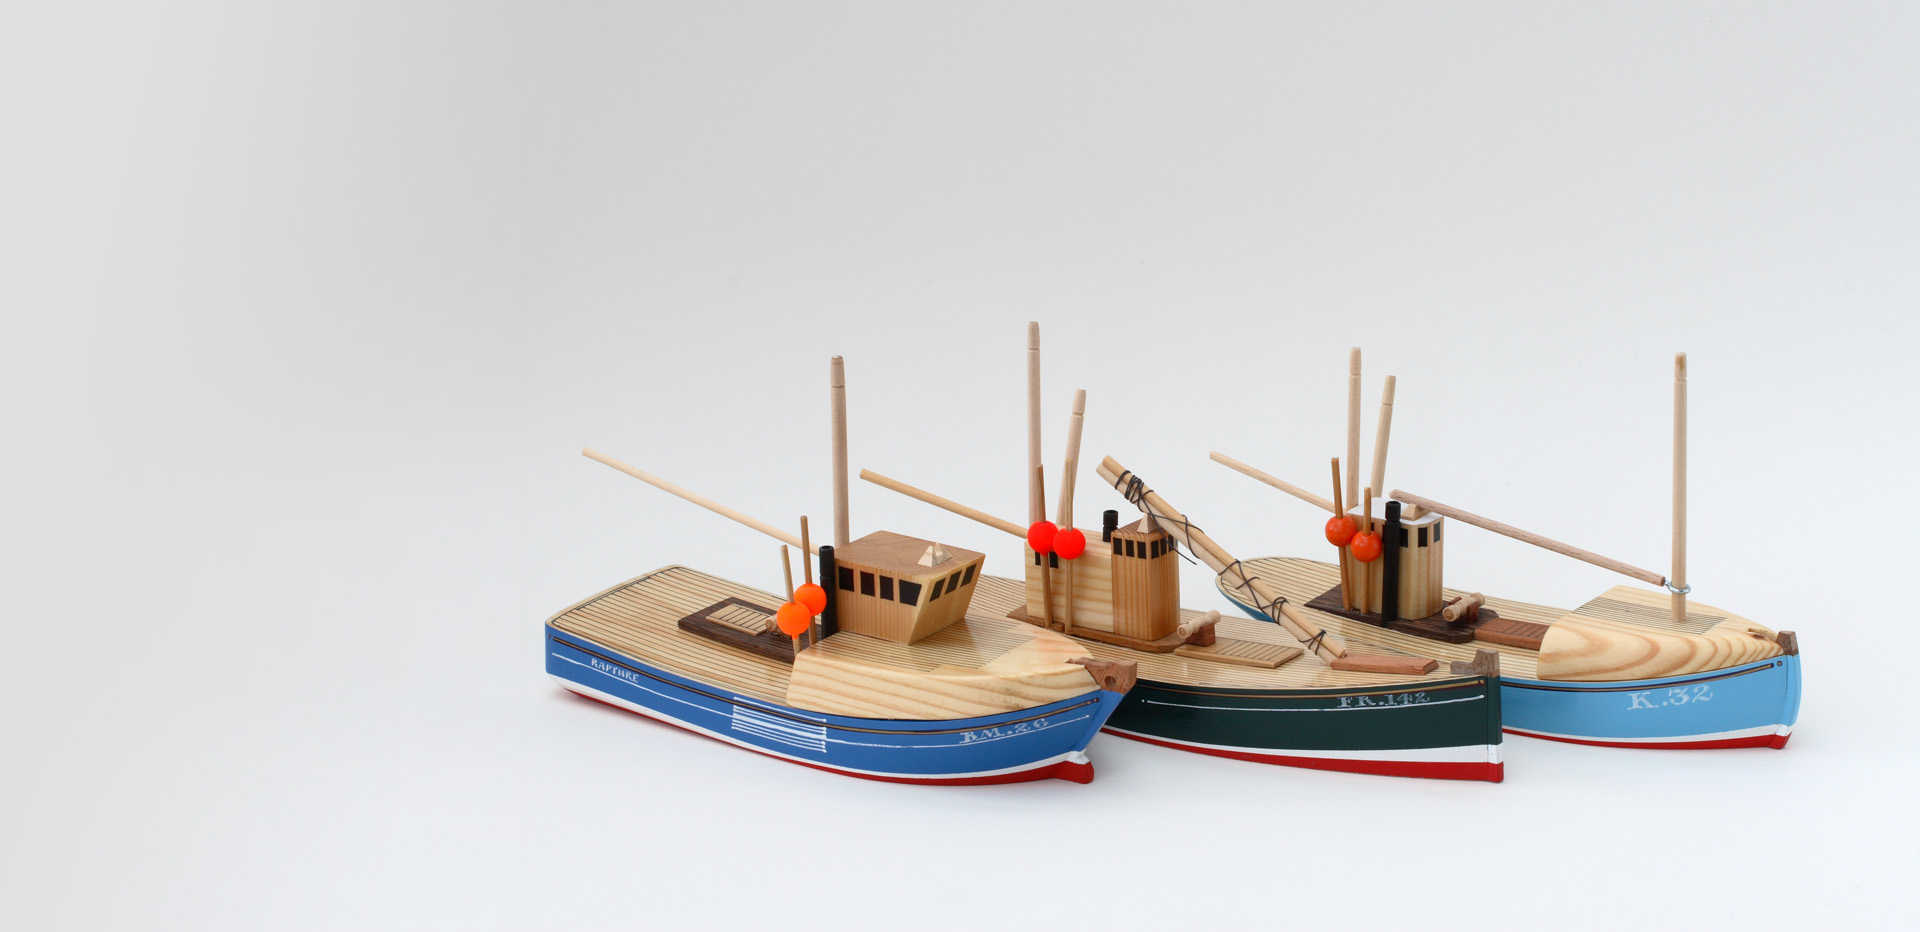 Edward Smith's Scottish Fishing Boat Models